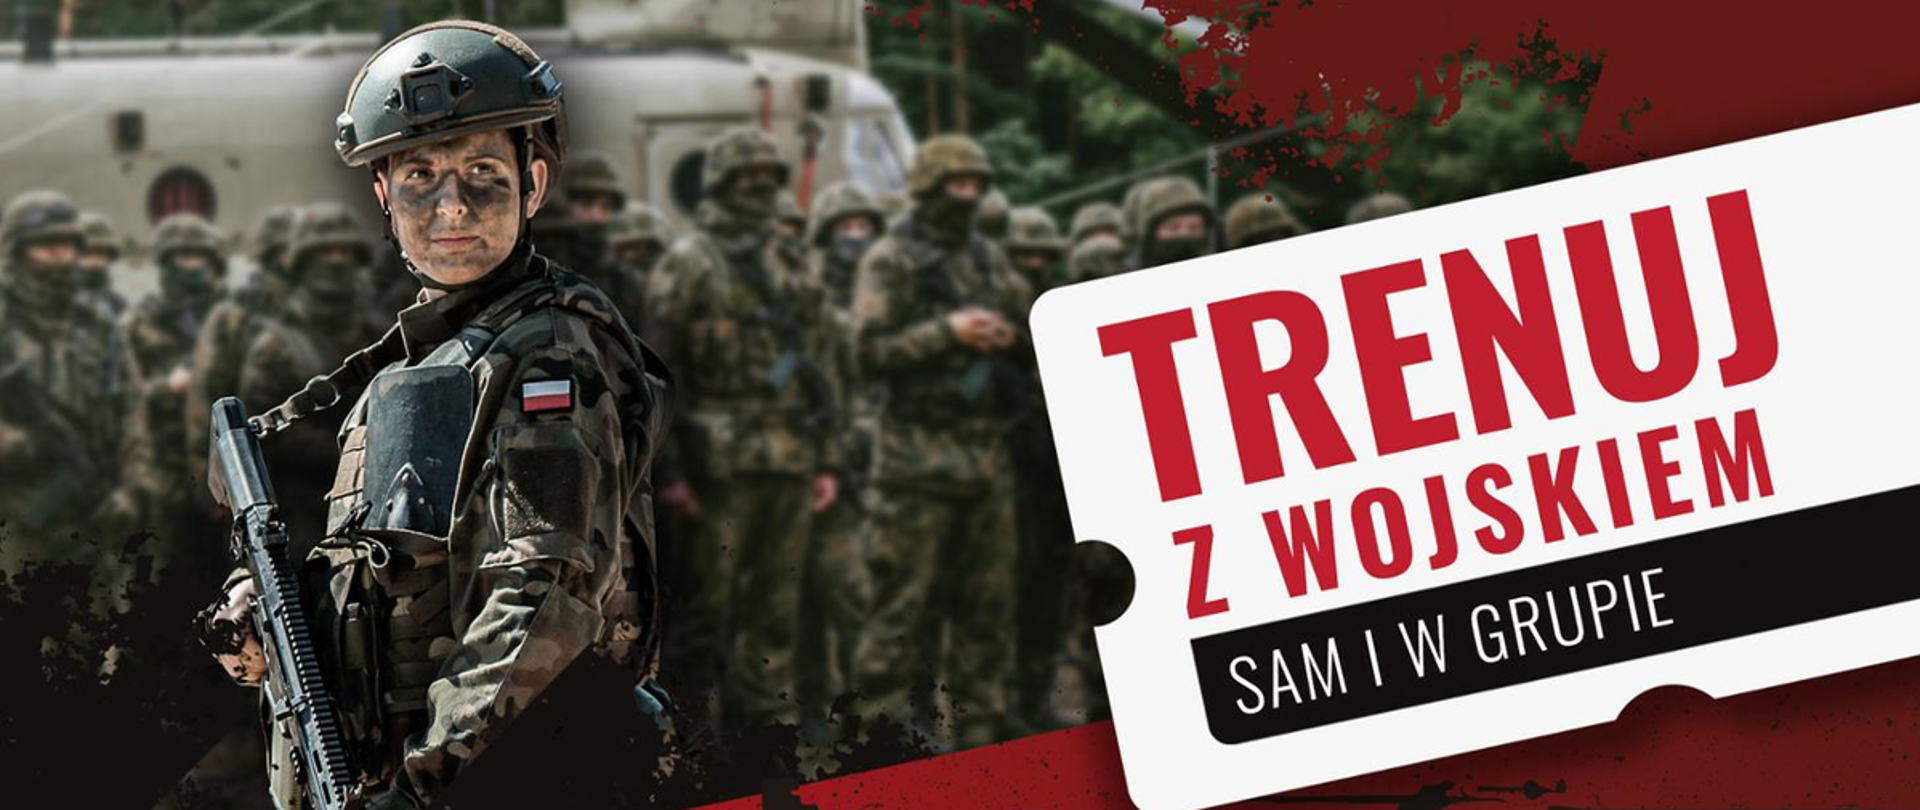 kolorowy plakat z motywem wojska z napisem z prawej strony "TRENUJ Z WOJSKIEM SAM I W GRUPIE"